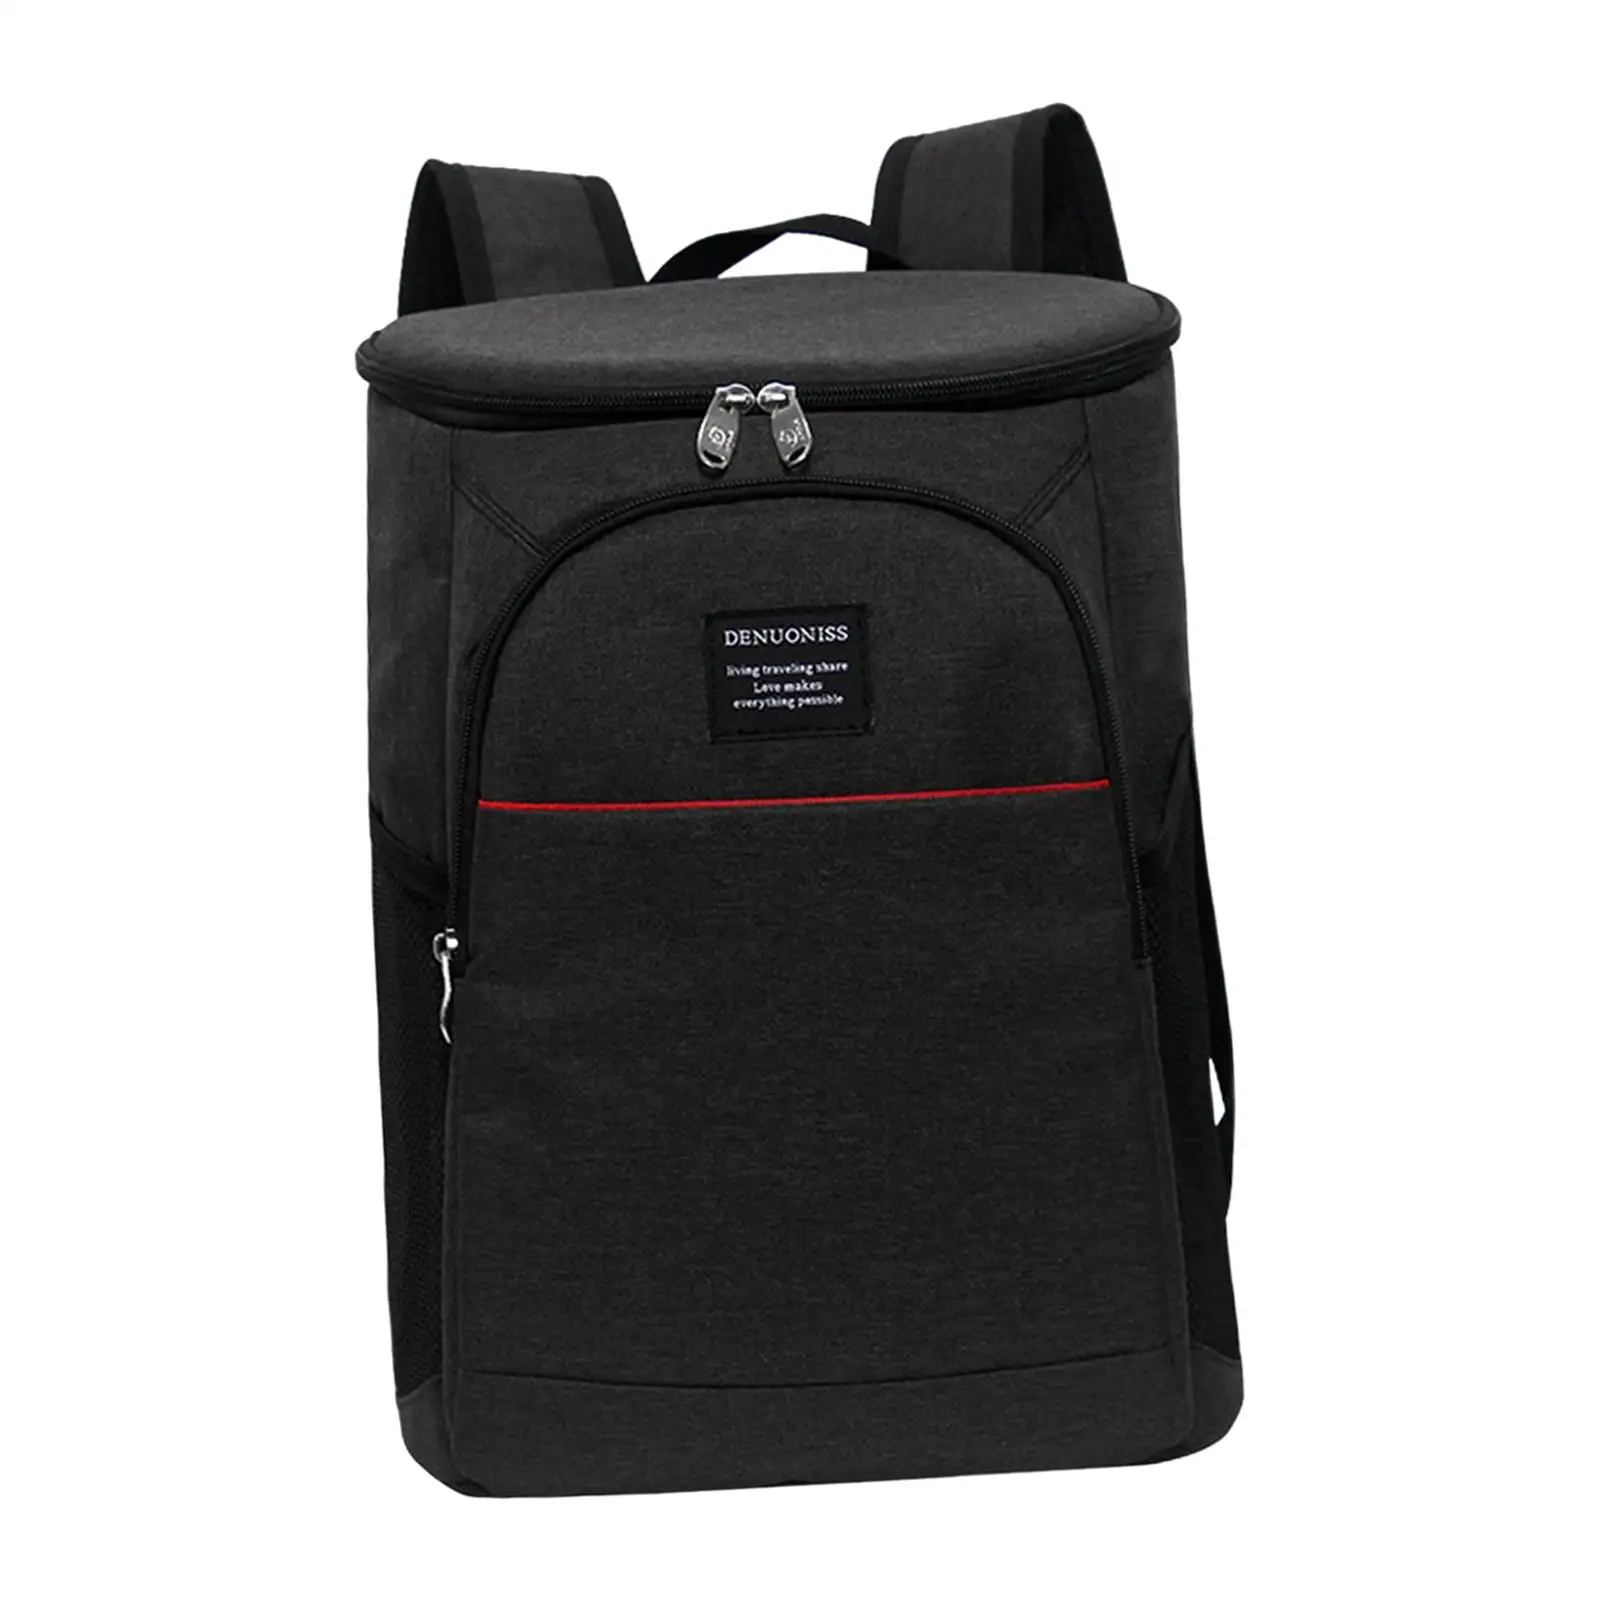 Backpack Cooler Adjustable Shoulder Straps Thermal Bag for Park Picnic Beach